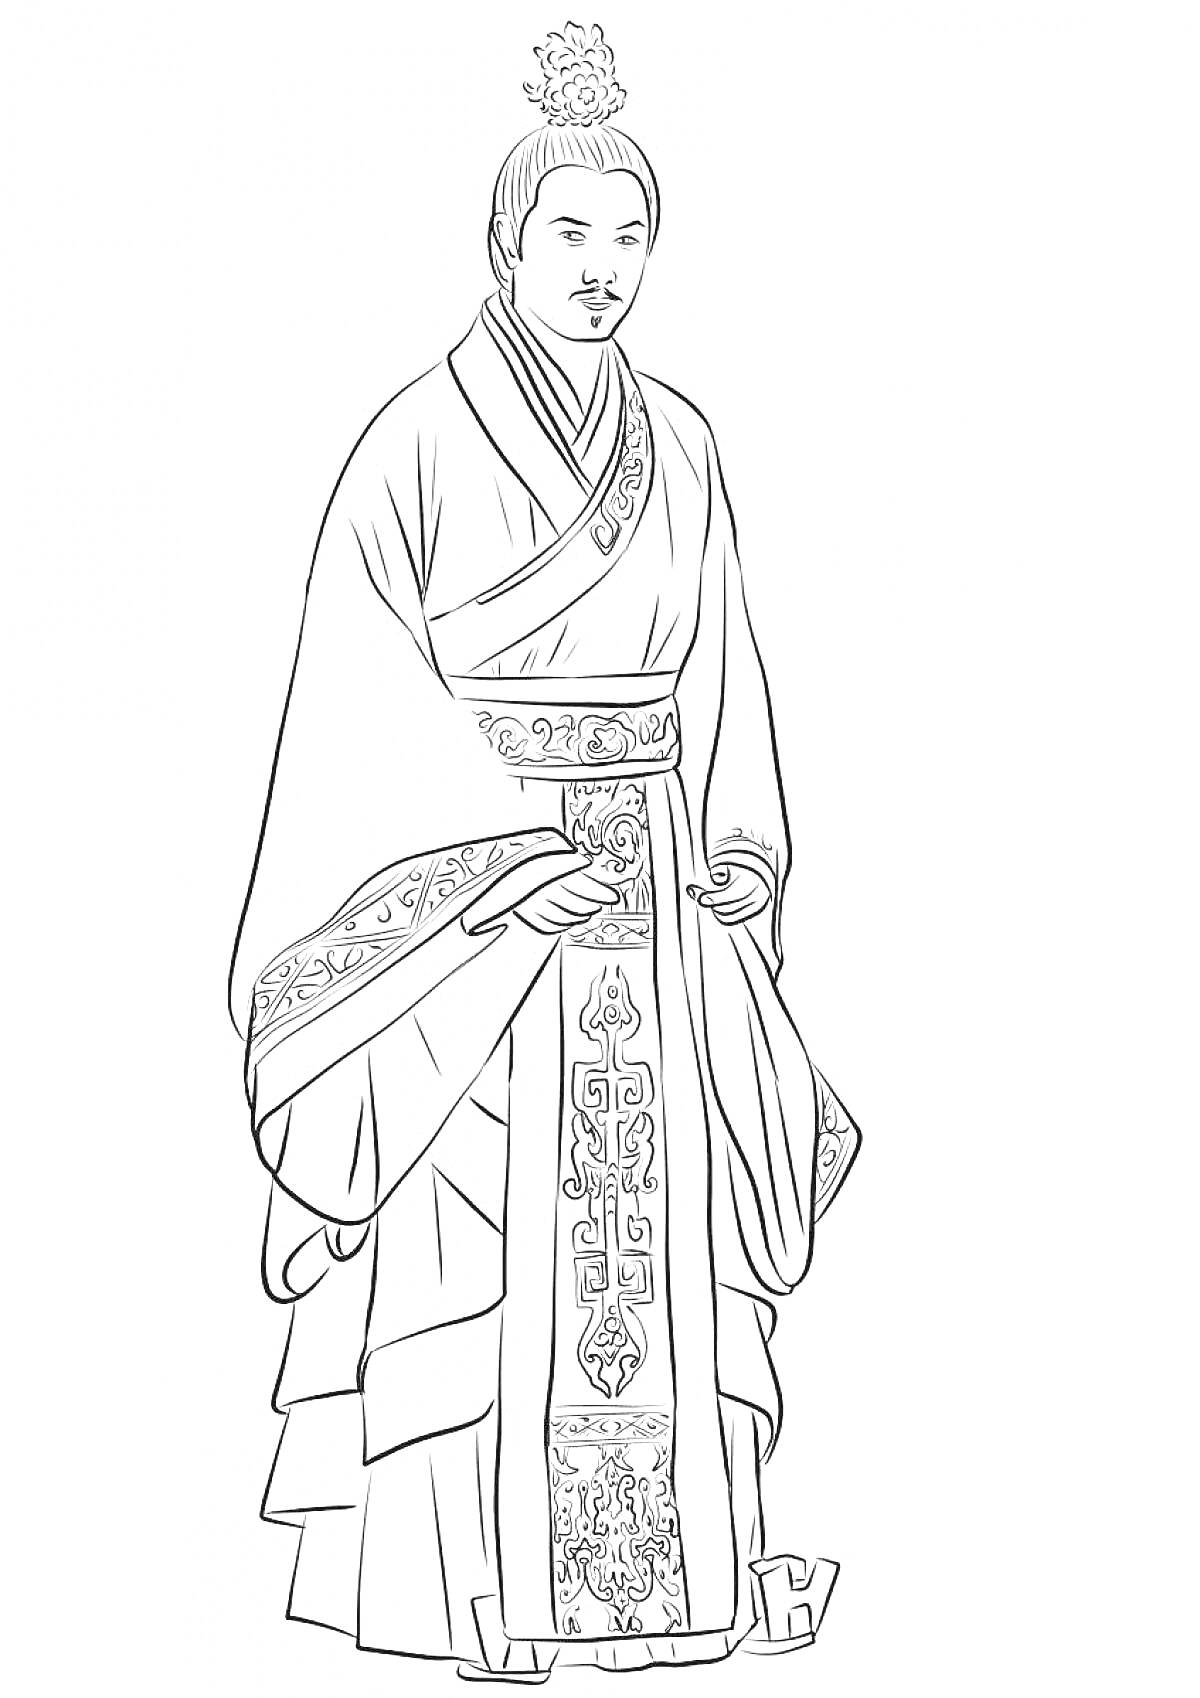 Император в традиционной китайской одежде